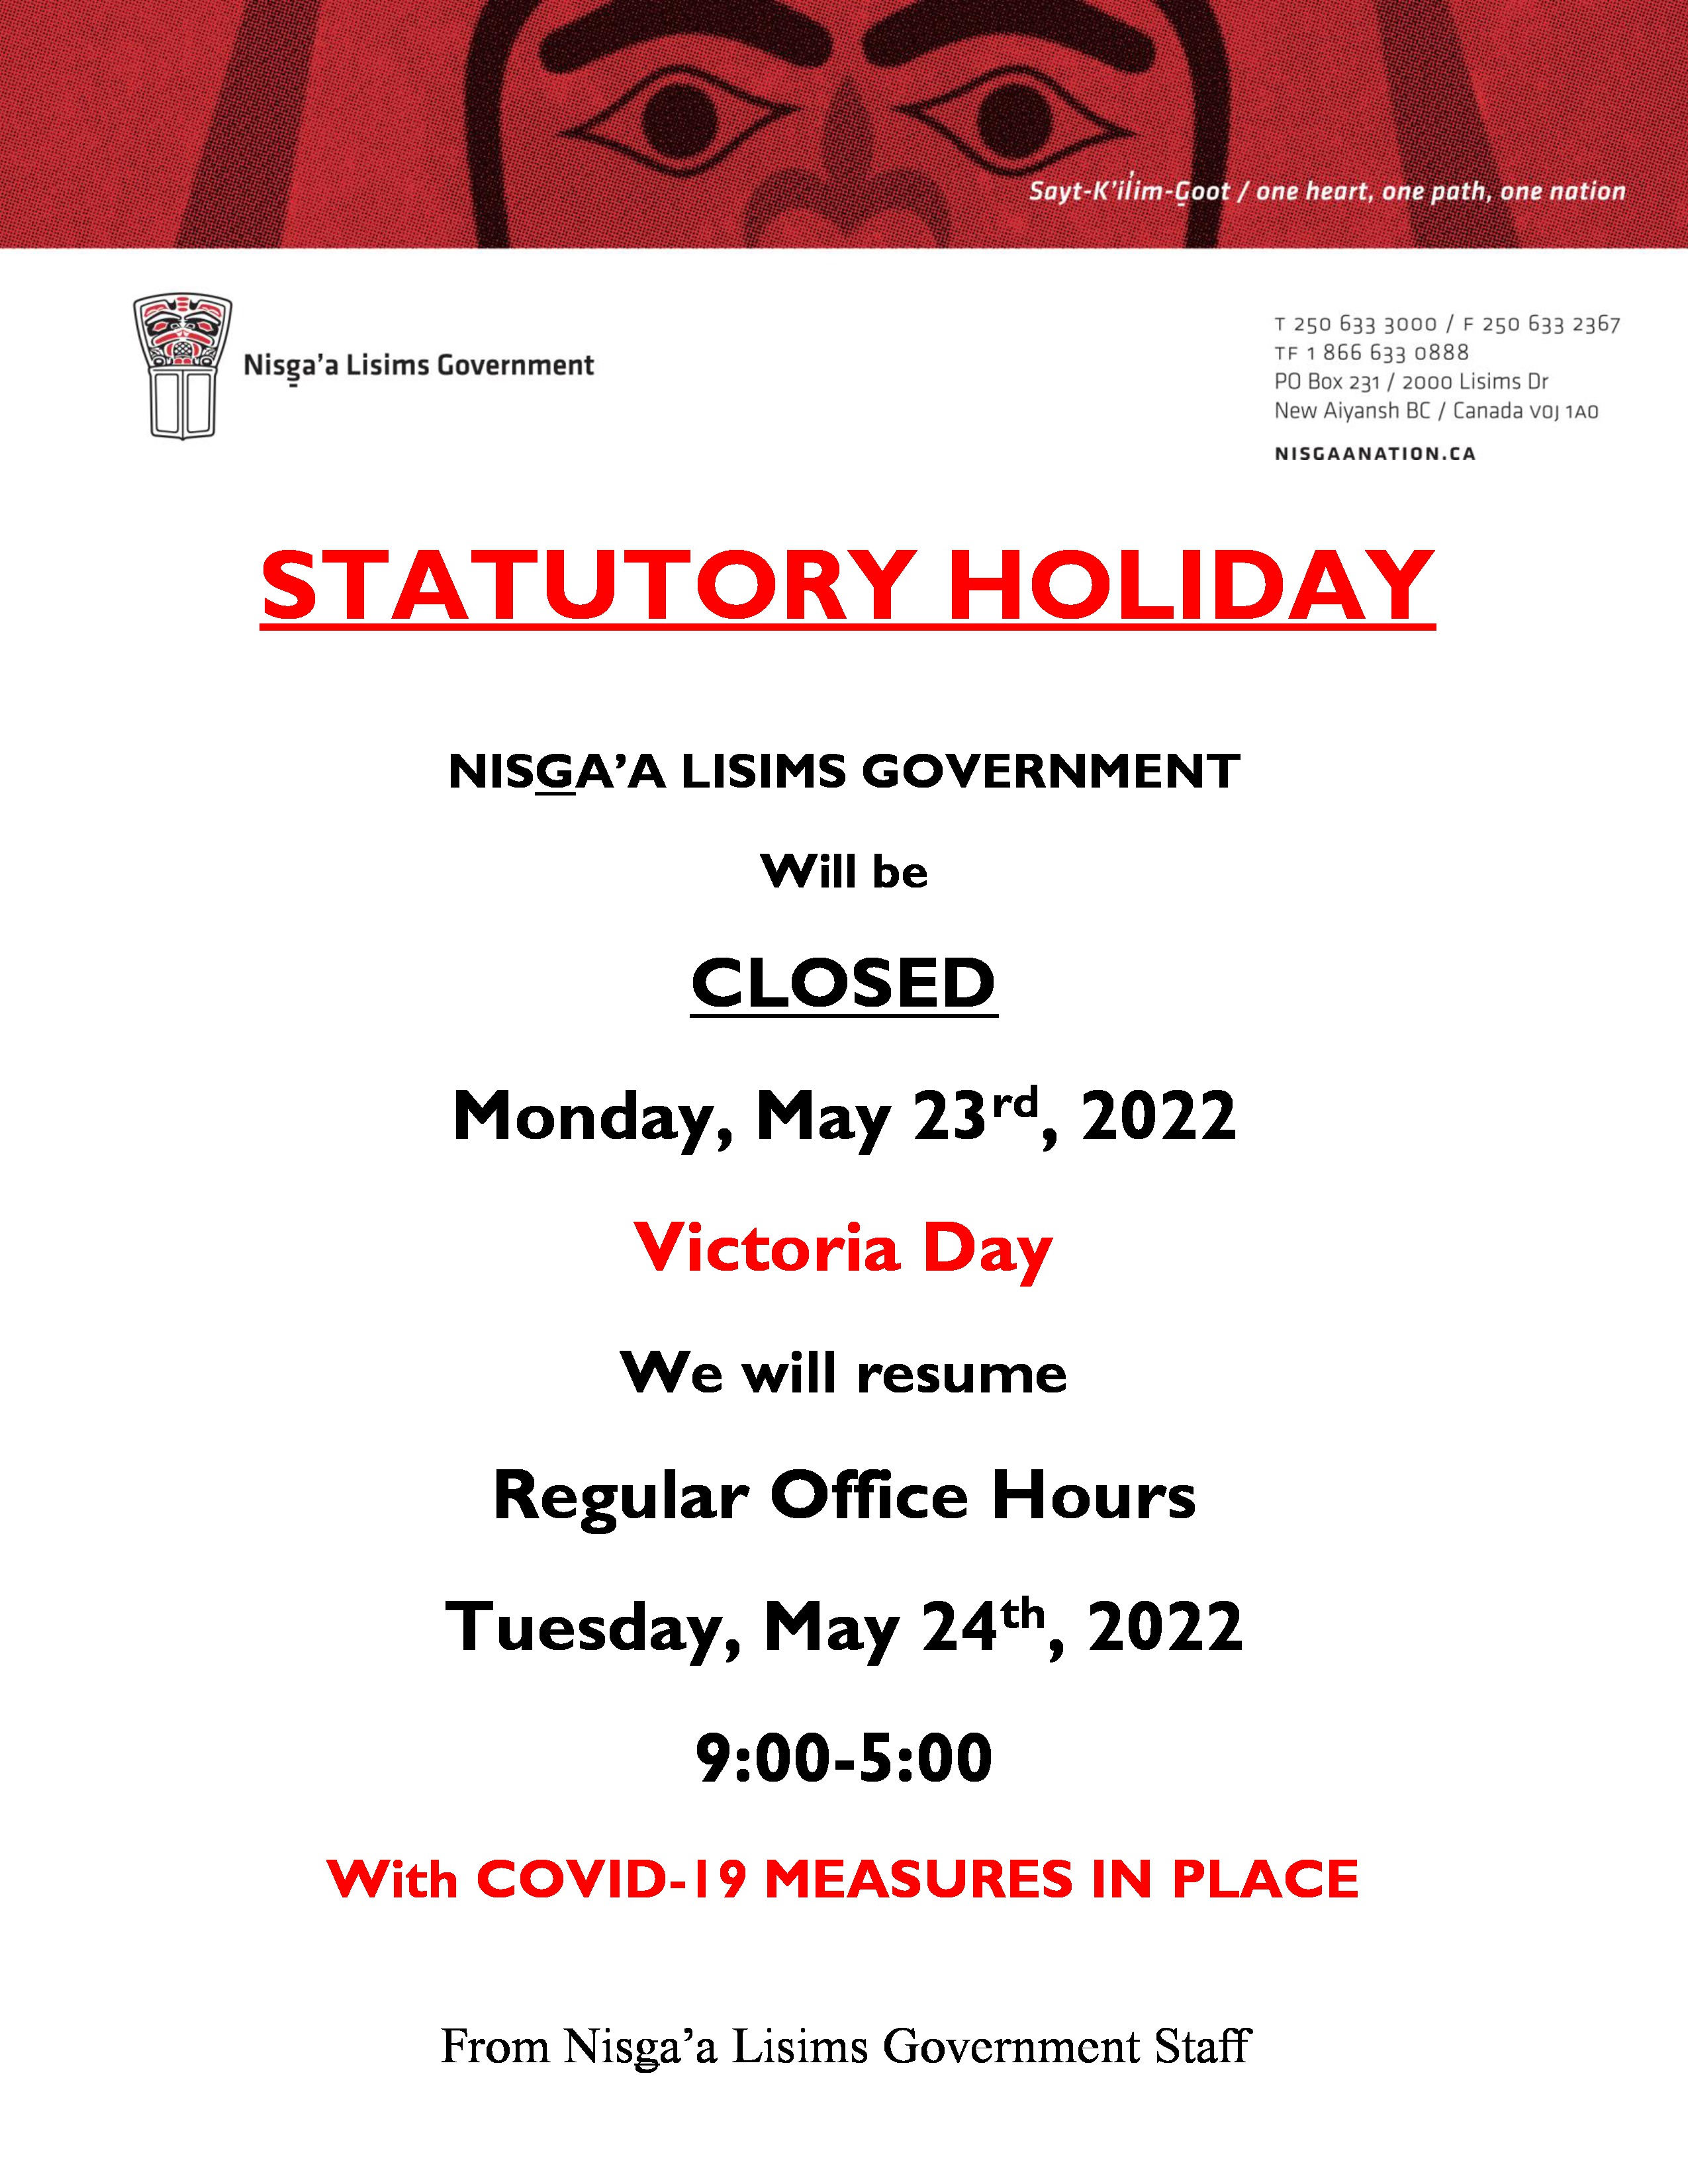 Nisga’a Lisims Government Building Office Closure - Victoria Day